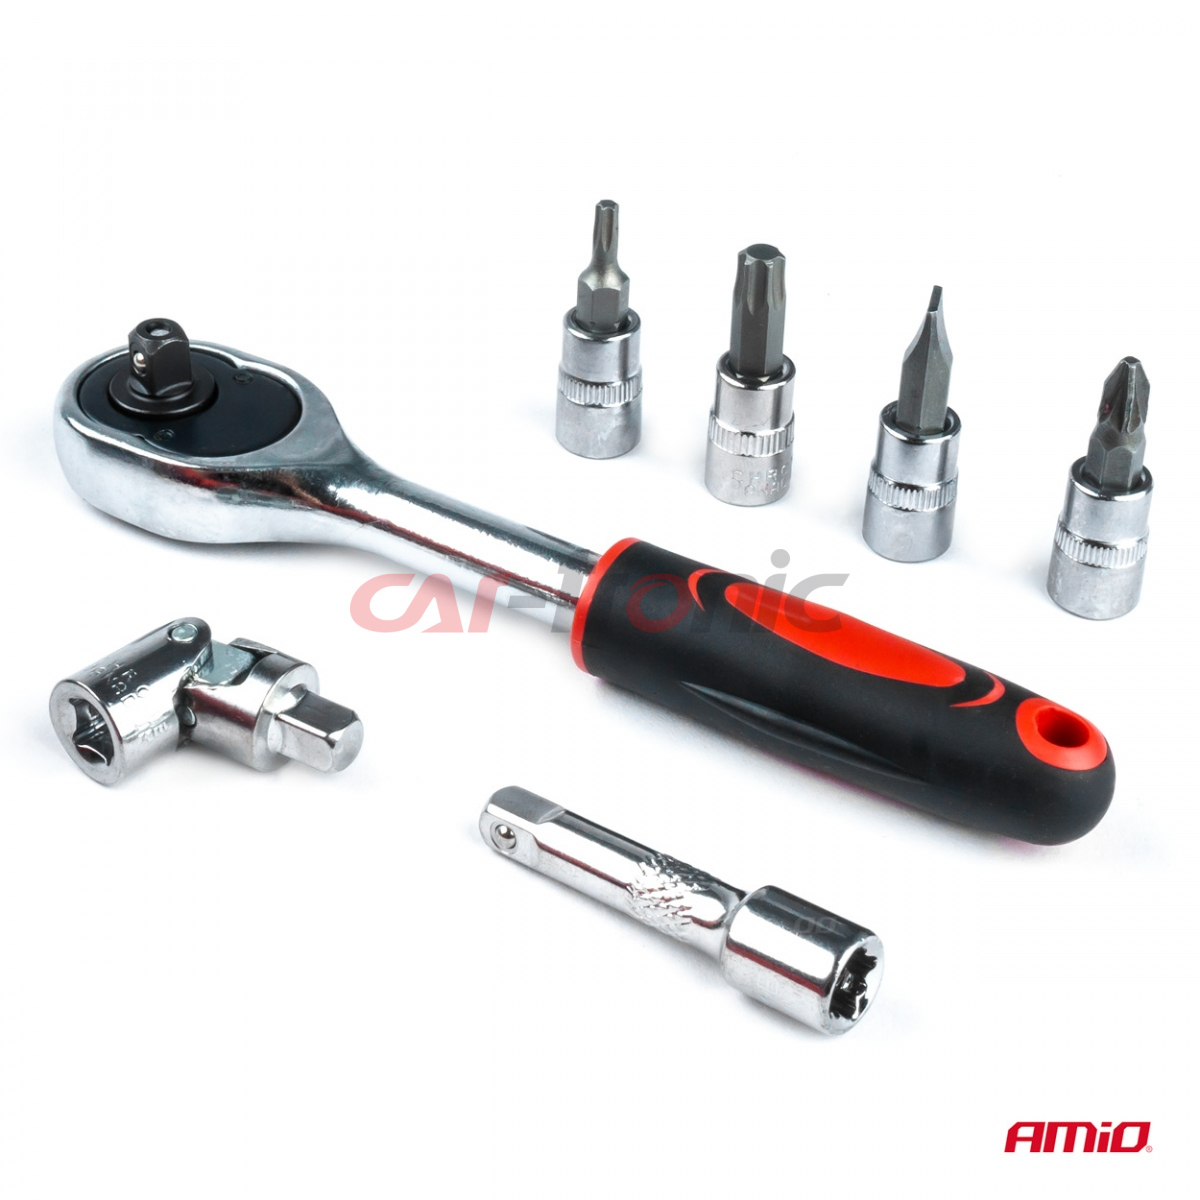 Zestaw narzędzi kluczy nasadowych klucze nasadowe AMIO-03136